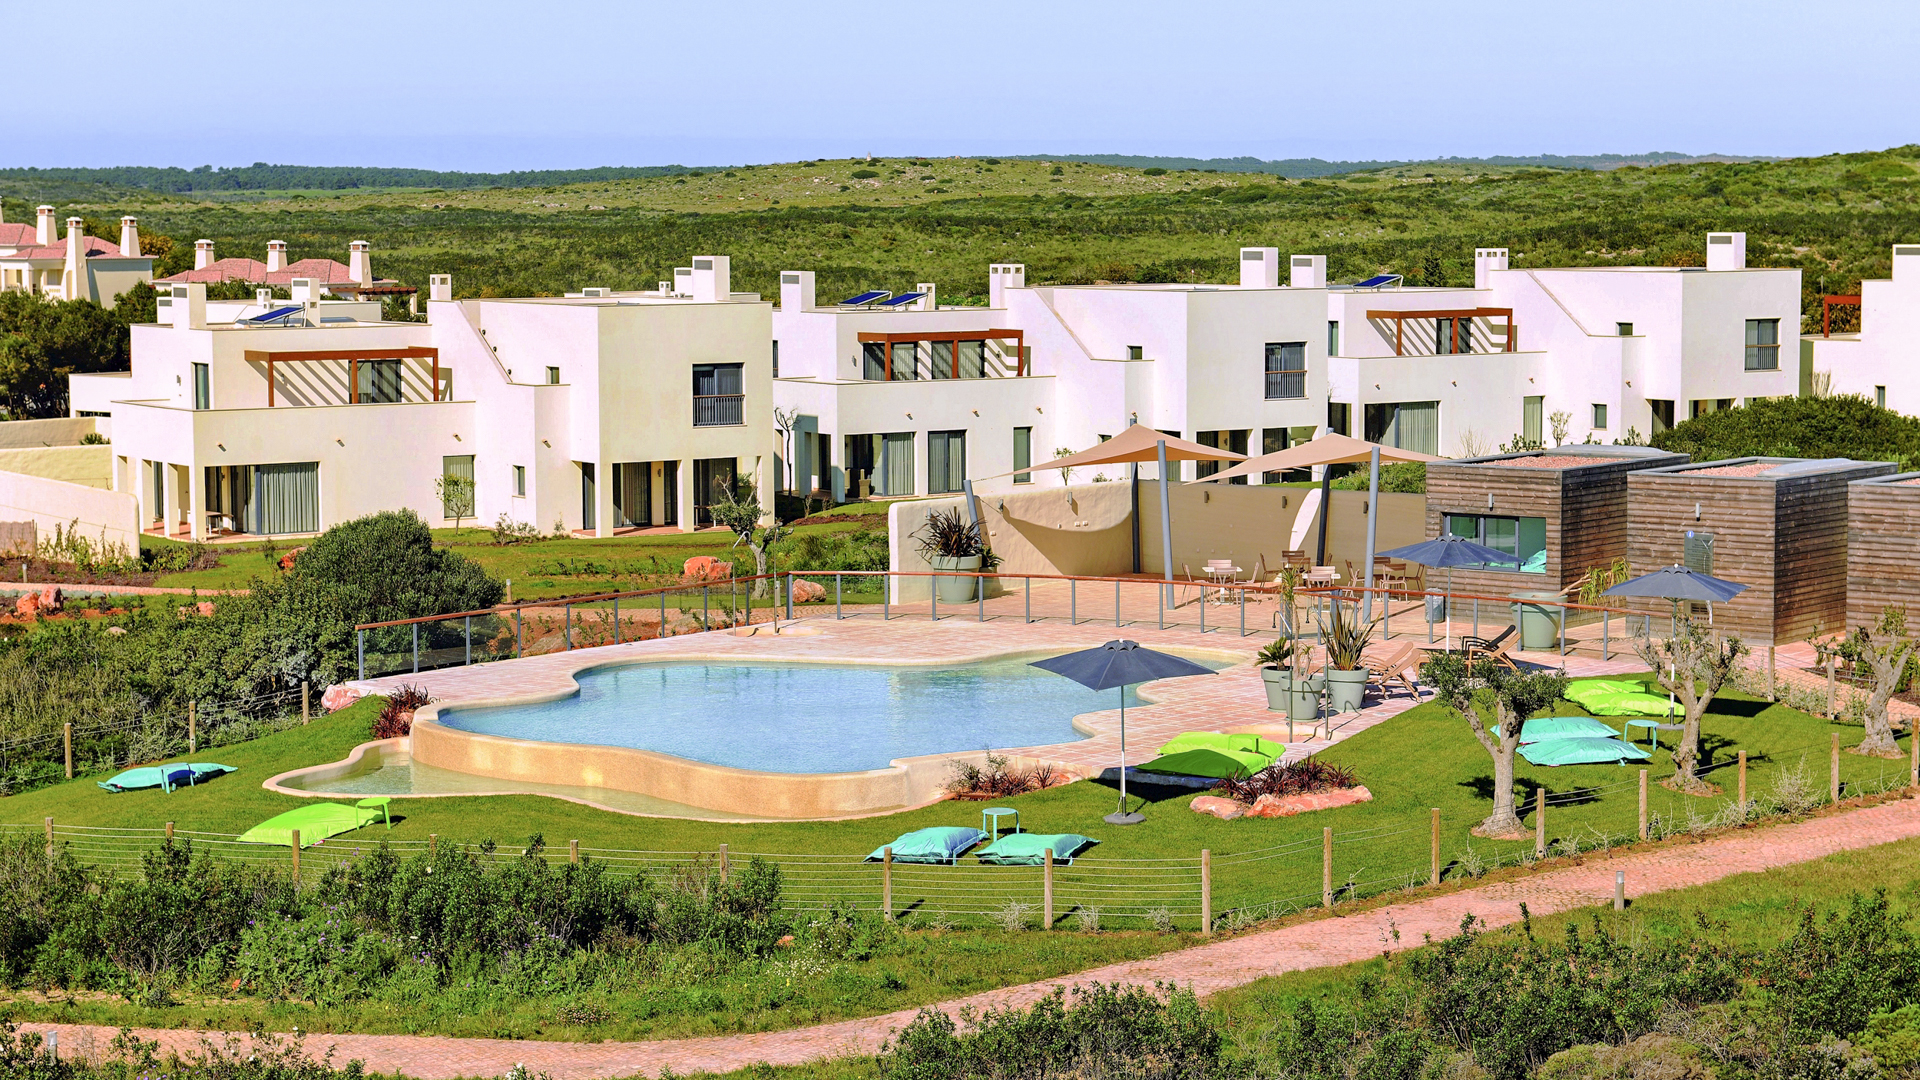 Luxuriöse 3 SZ Häuser in Strandnähe mit Garten, Sagres - West Algarve | S1297 Die "Garden Houses" mit Luxusausstattung befinden sich in einem 5 Sterne Resort, in Strandnähe. Eine hervorragende Investitionsmöglichkeit für die Vermietung und die eigenen Ferien. Traumhafte Lage! 